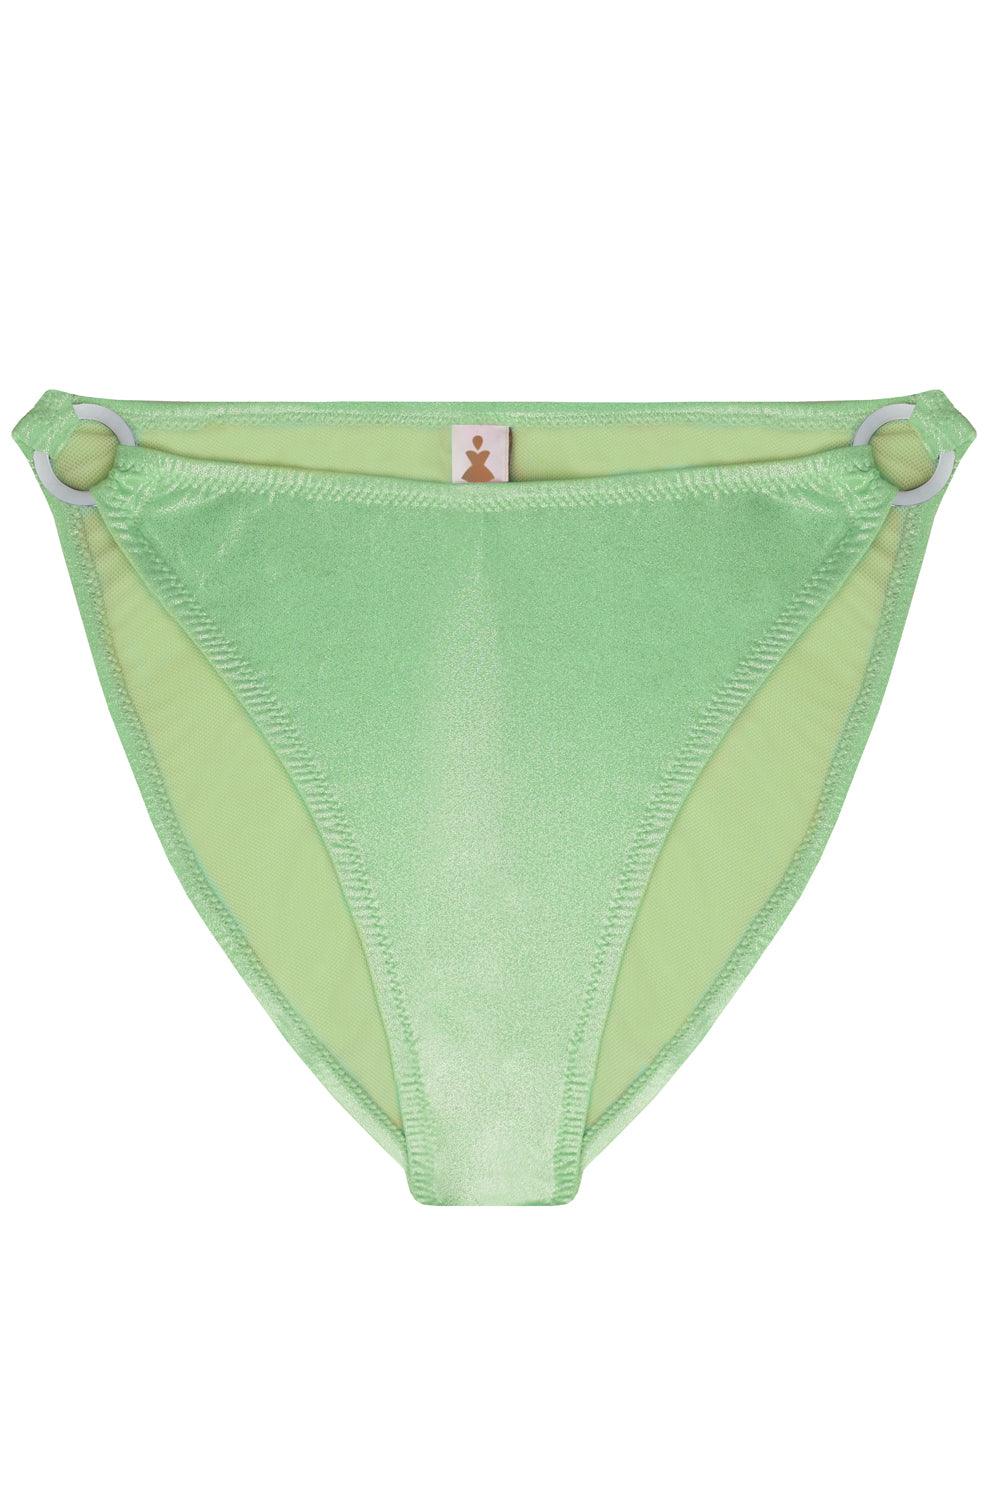 Titaniya Greenery high waisted bikini bottom - Bikini bottom by yesUndress. Shop on yesUndress